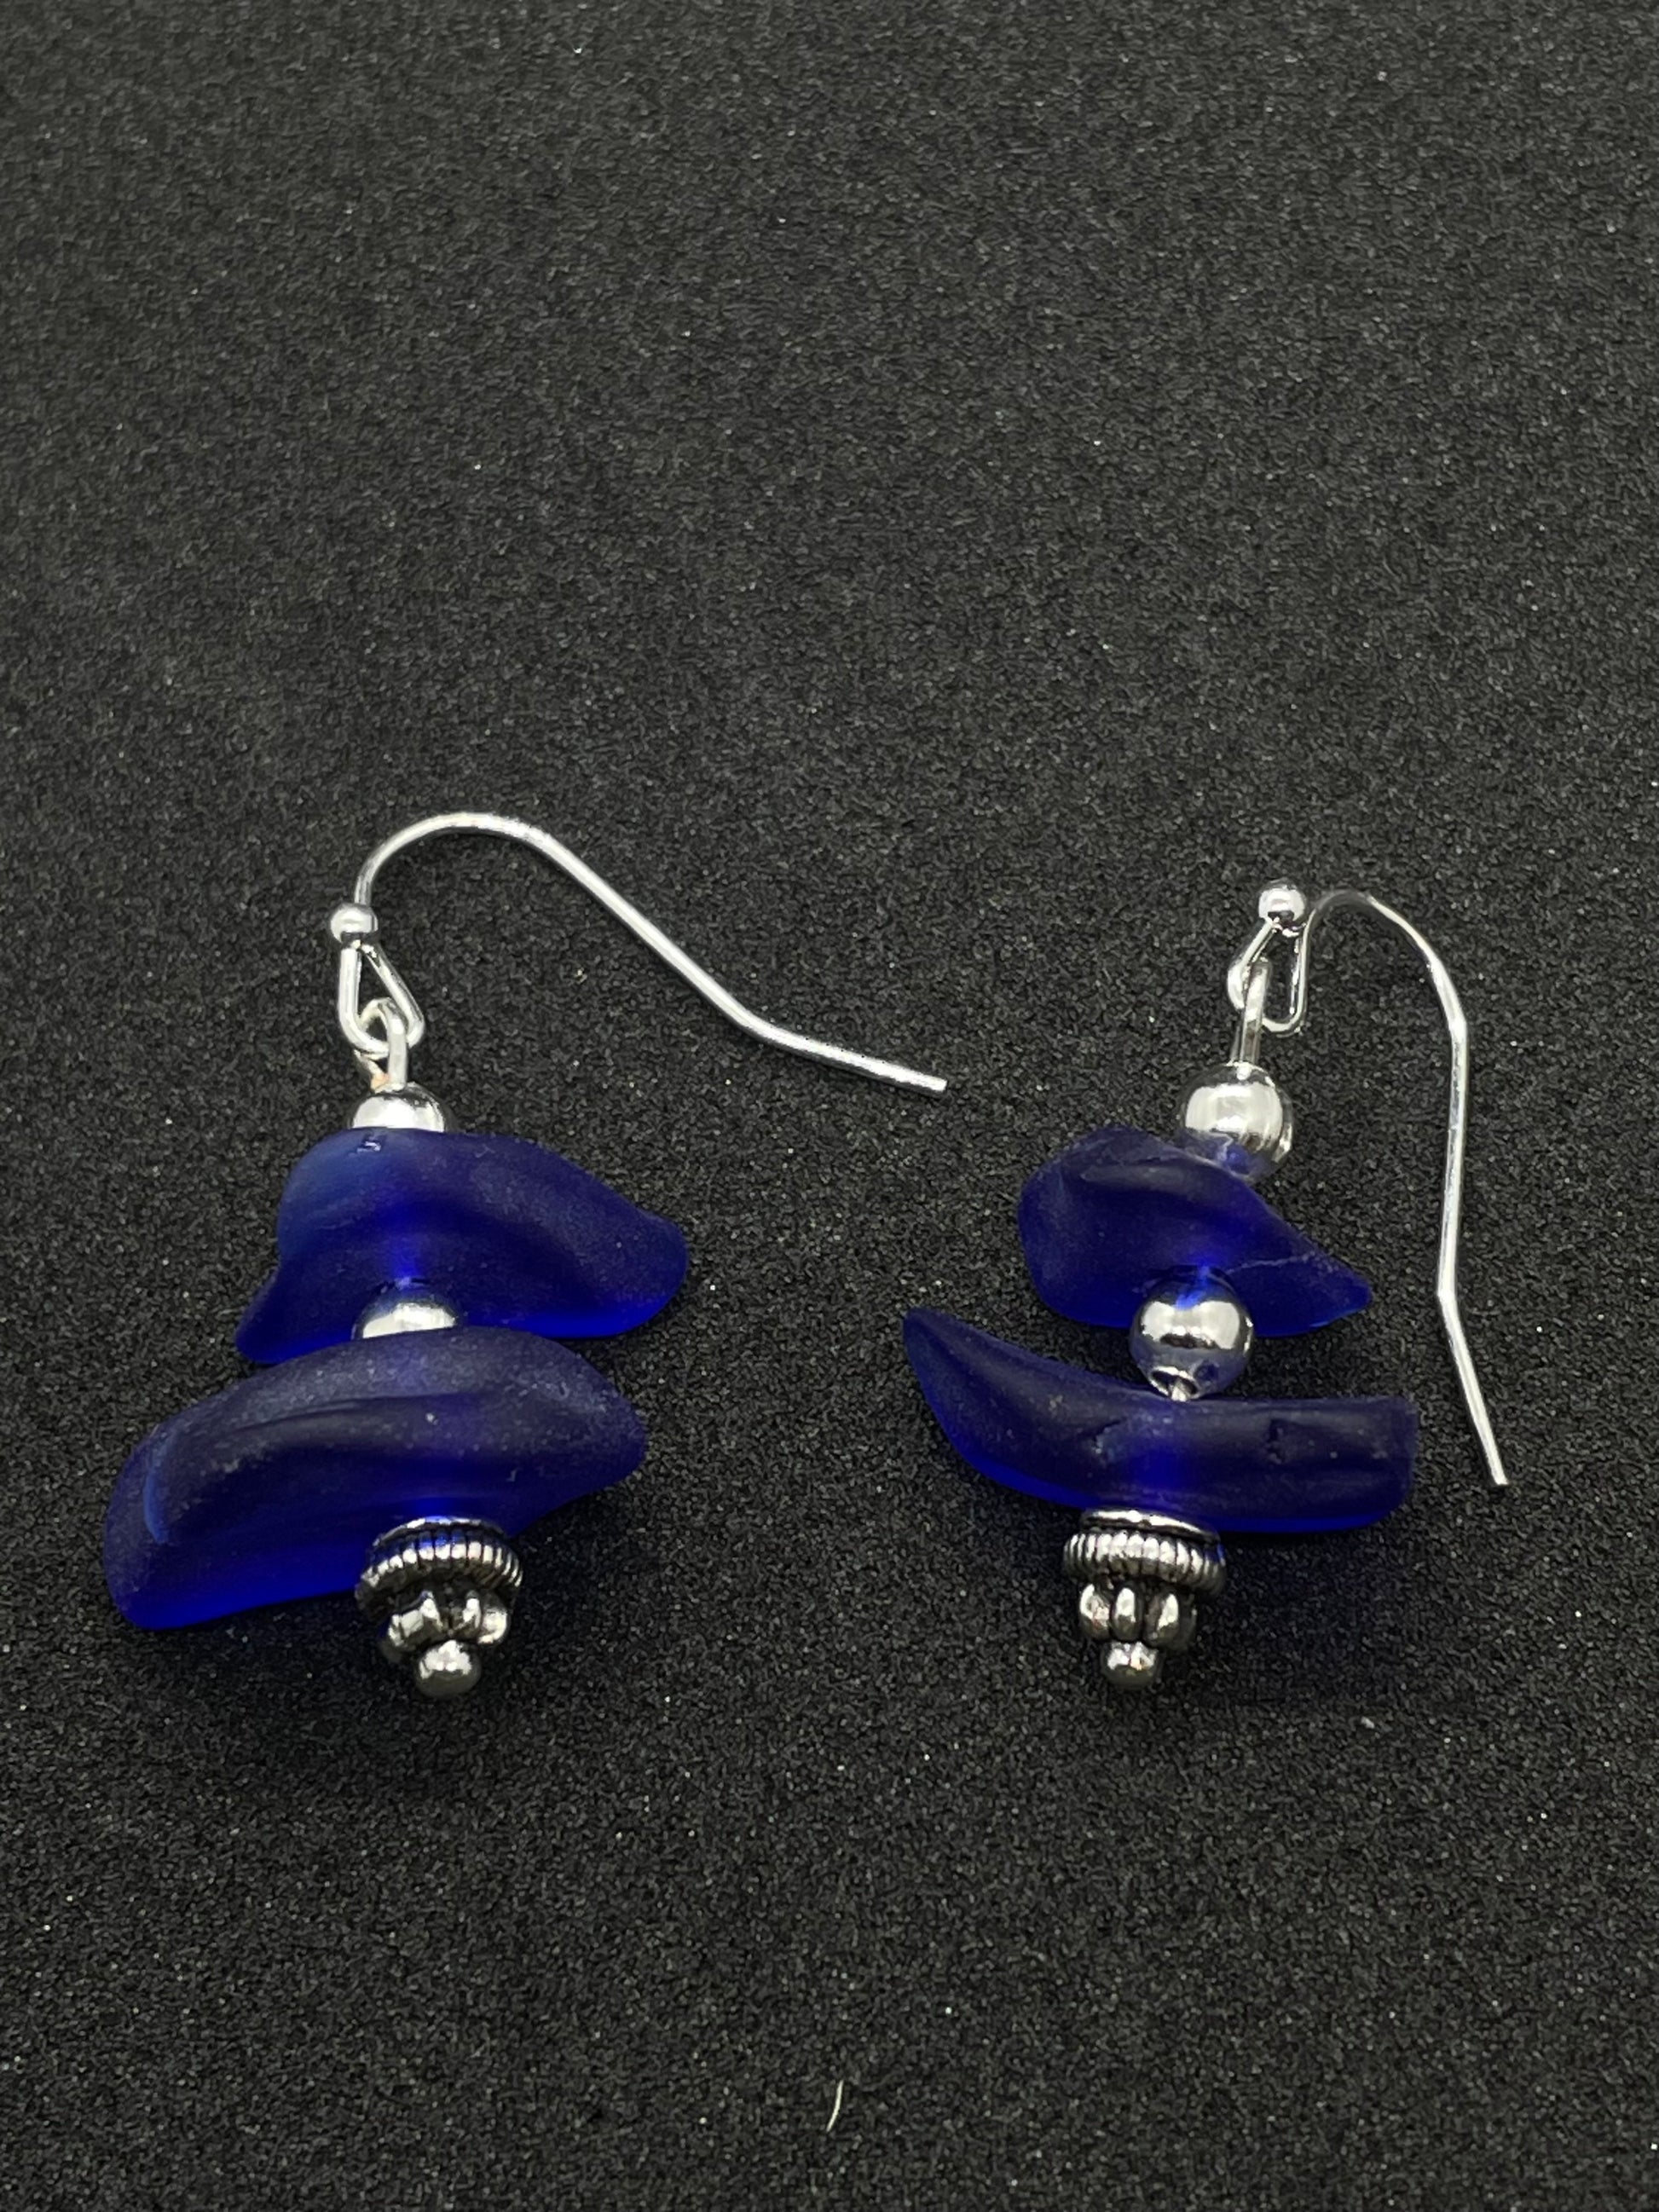 3 piece blue Seaglass drop earrings